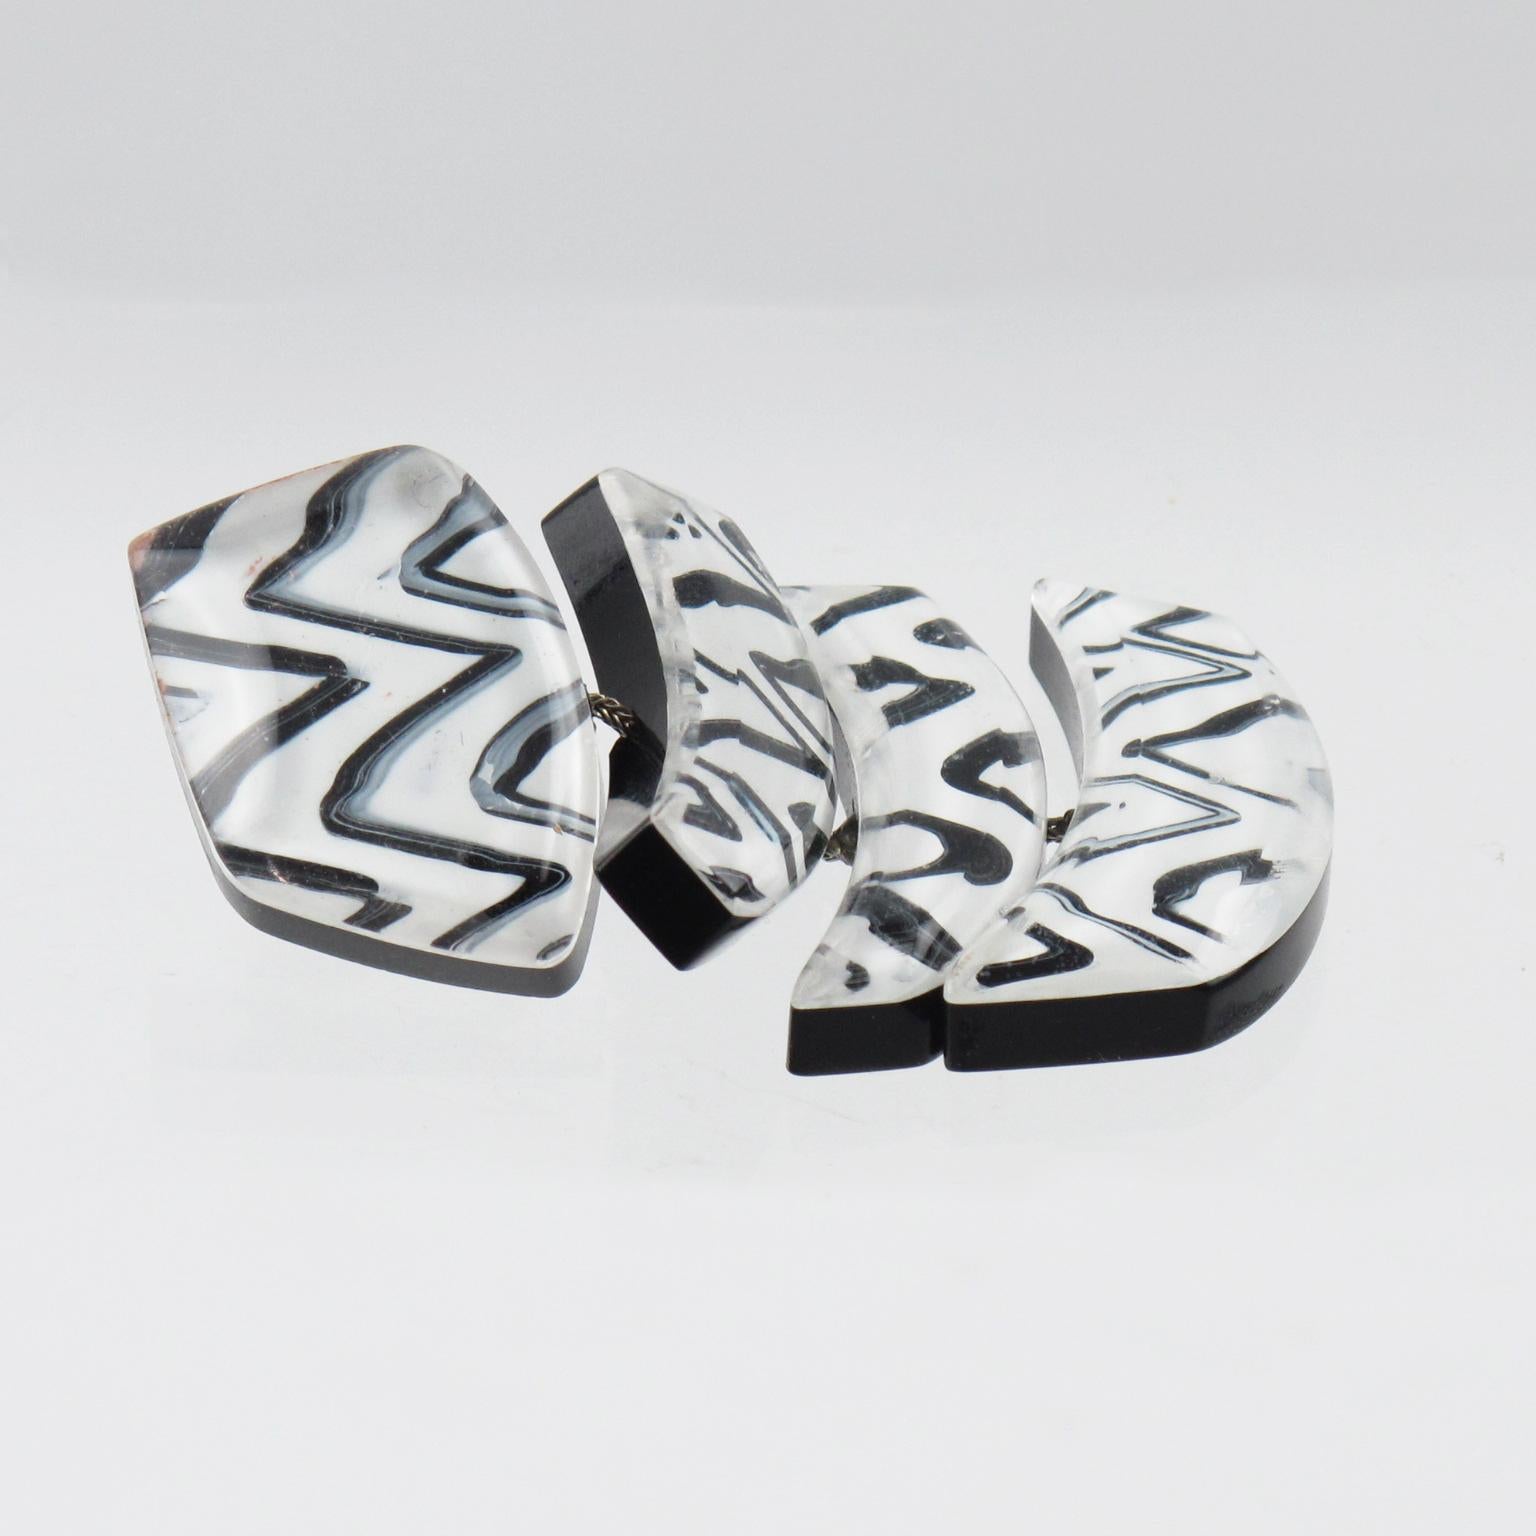 Anne & Frank Vigneri Black White Lucite Clip Earrings 1